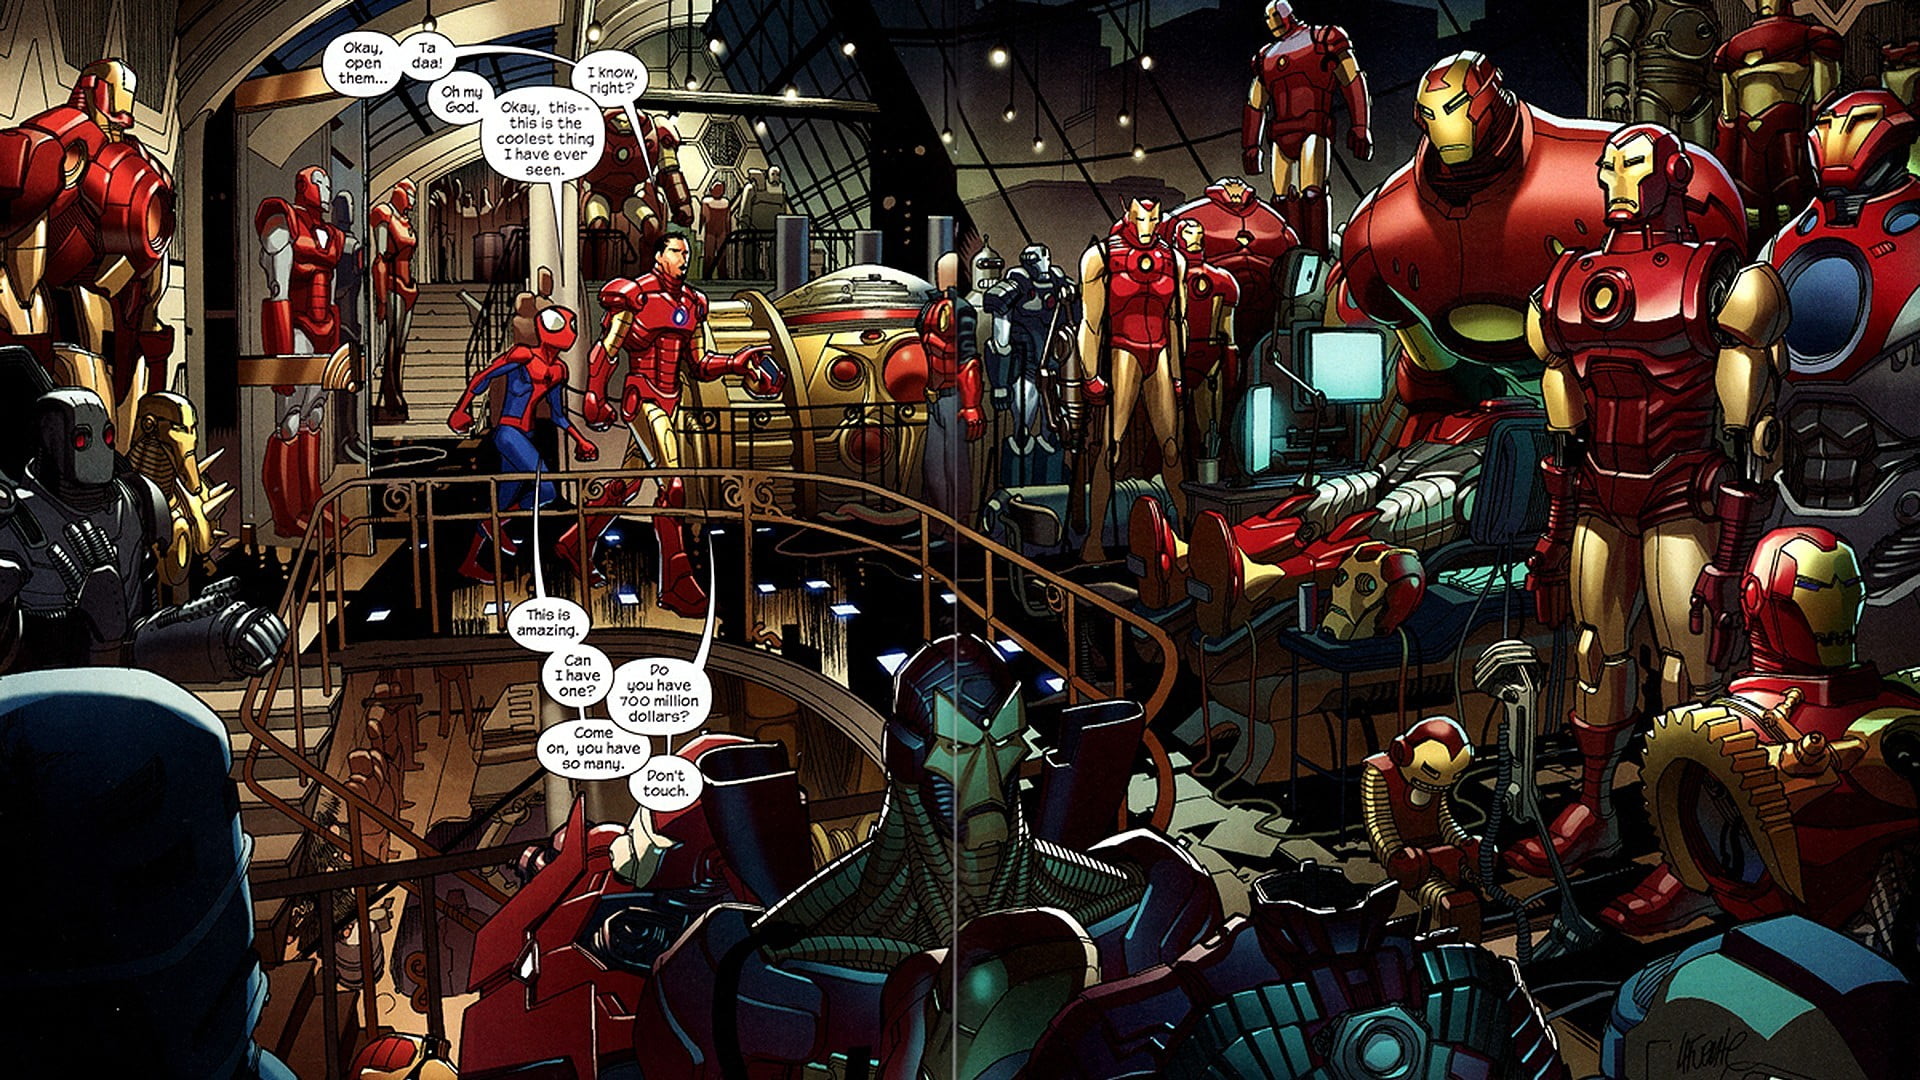 Iron Man digital wallpaper, comics, Spider-Man, Bender, cultures